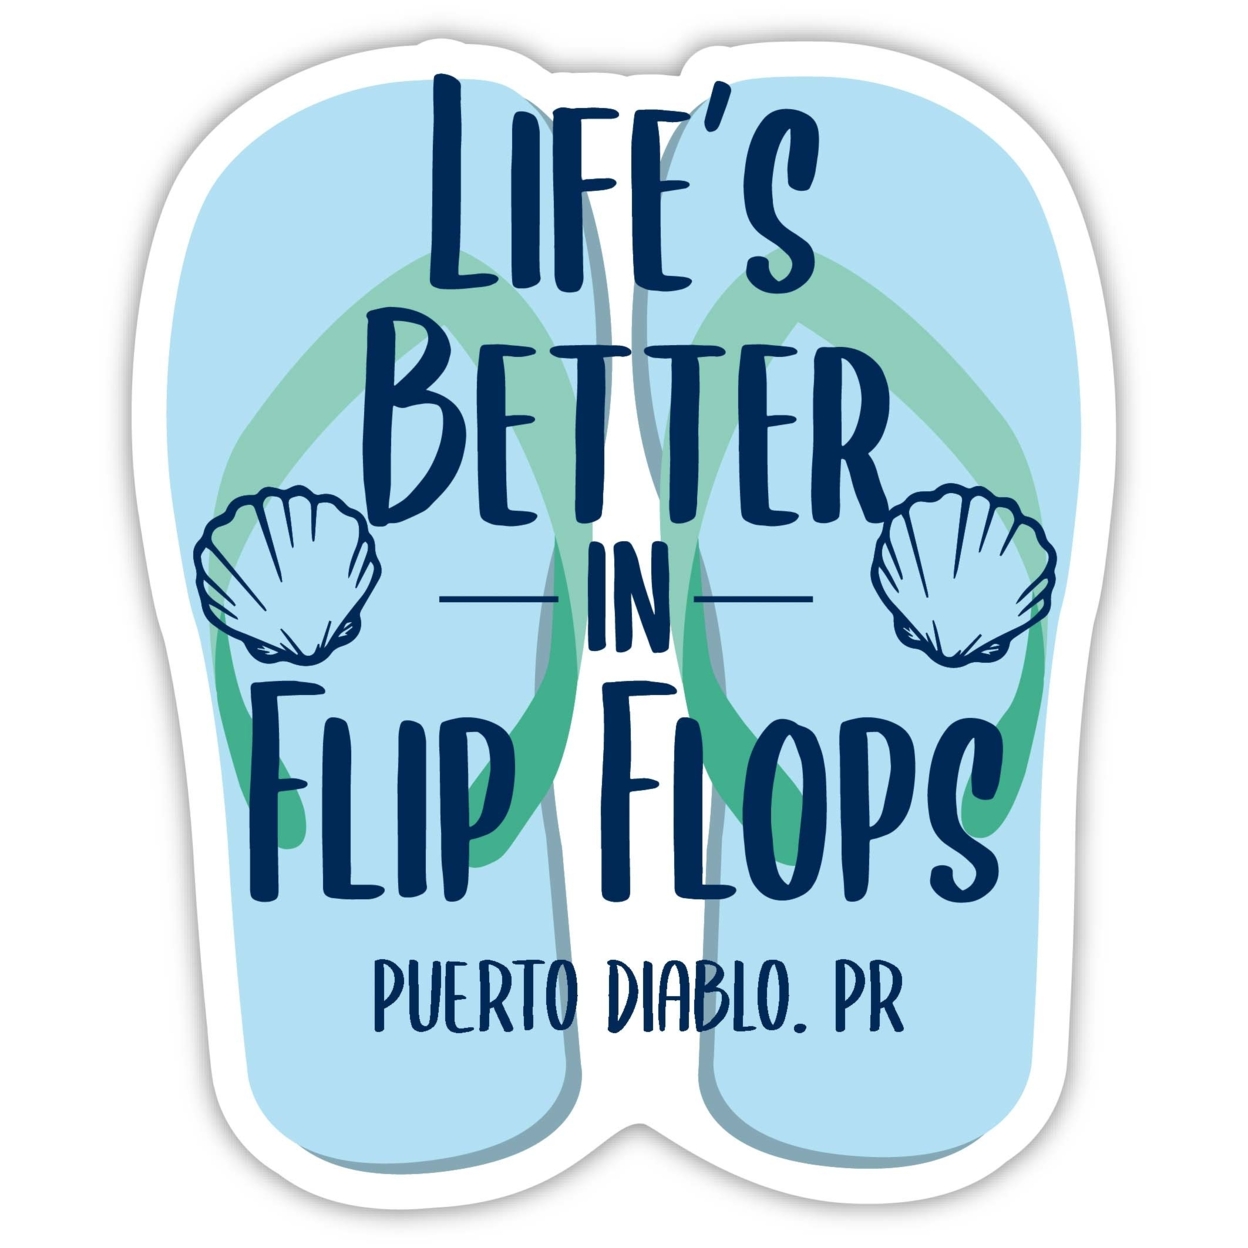 Puerto Diablo Puerto Rico Souvenir 4 Inch Vinyl Decal Sticker Flip Flop Design